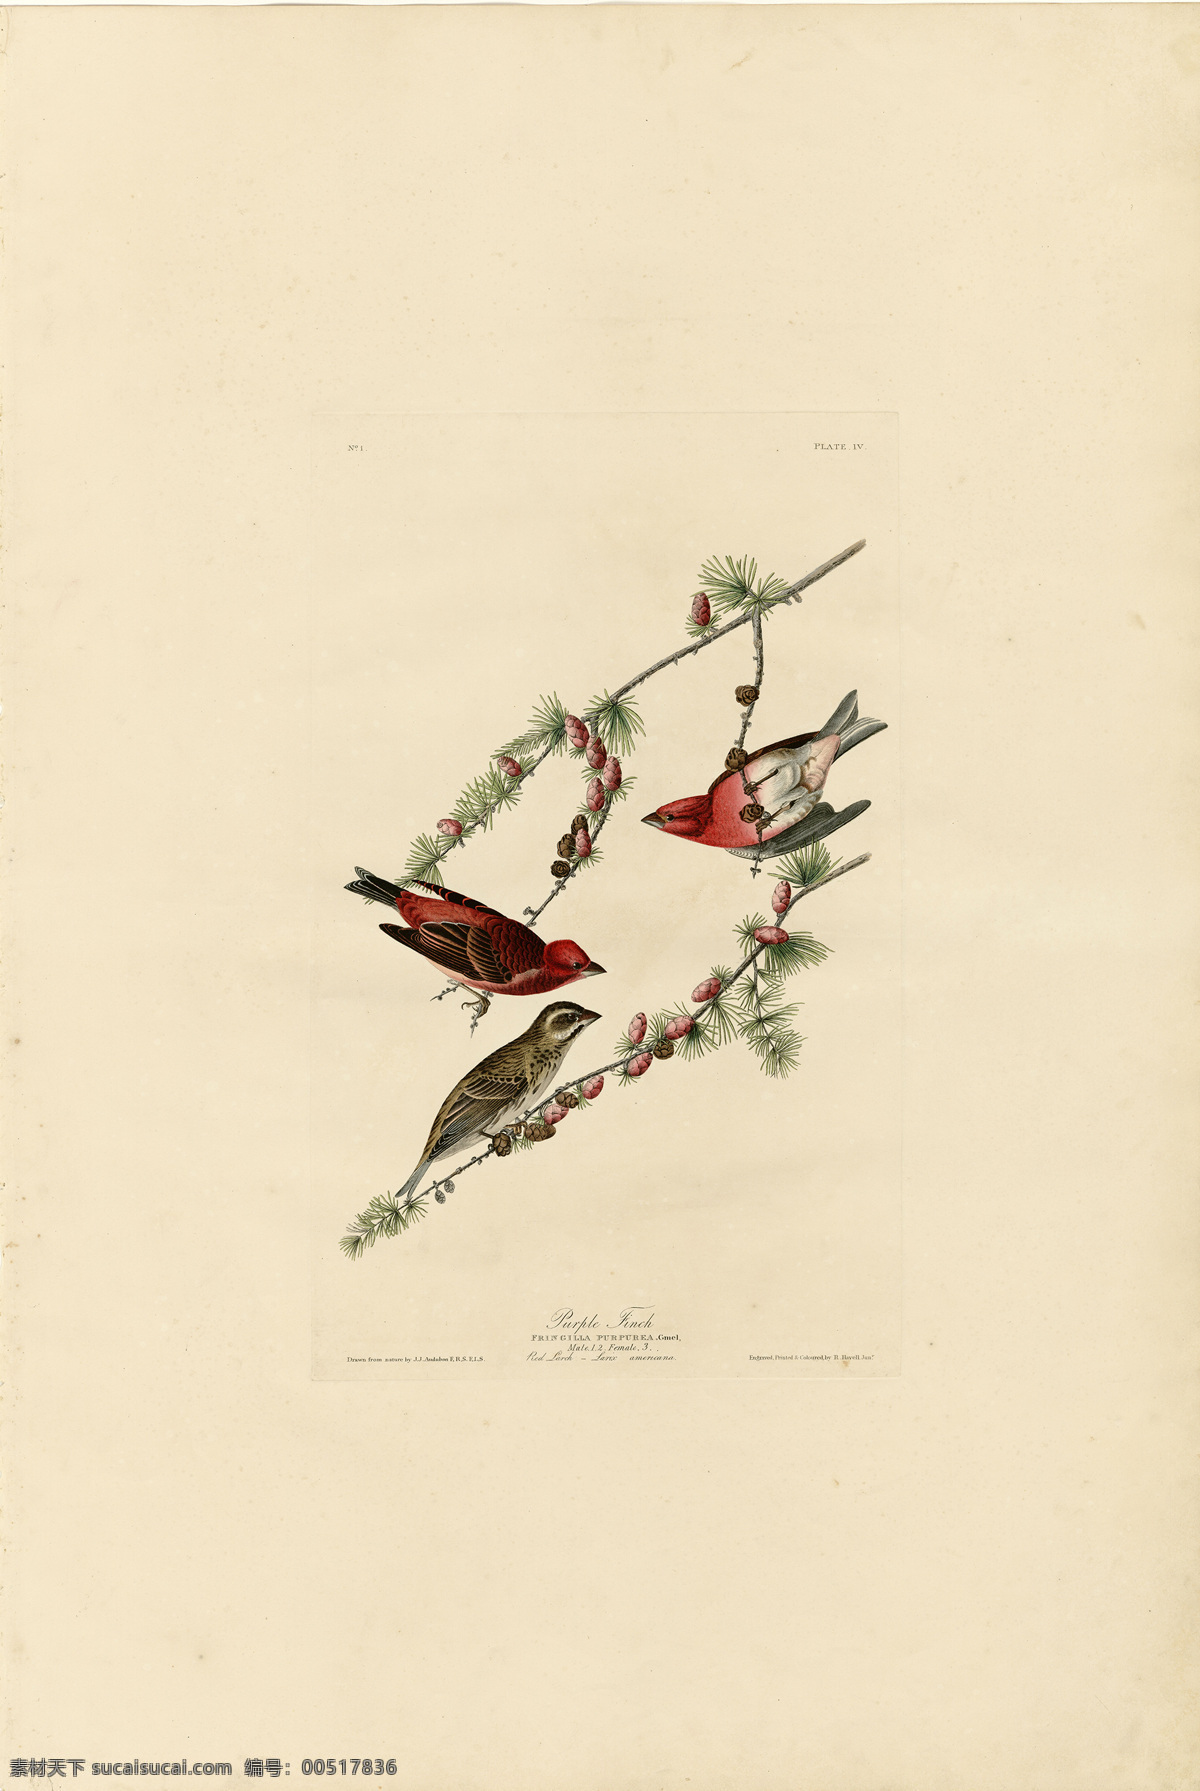 手绘鸟类系列 鸟类 美国鸟类 手绘 花鸟 鸟儿 鸟 禽类 西方图谱 植物 贝拉贝罗 鸟类素材 绘画书法 文化艺术